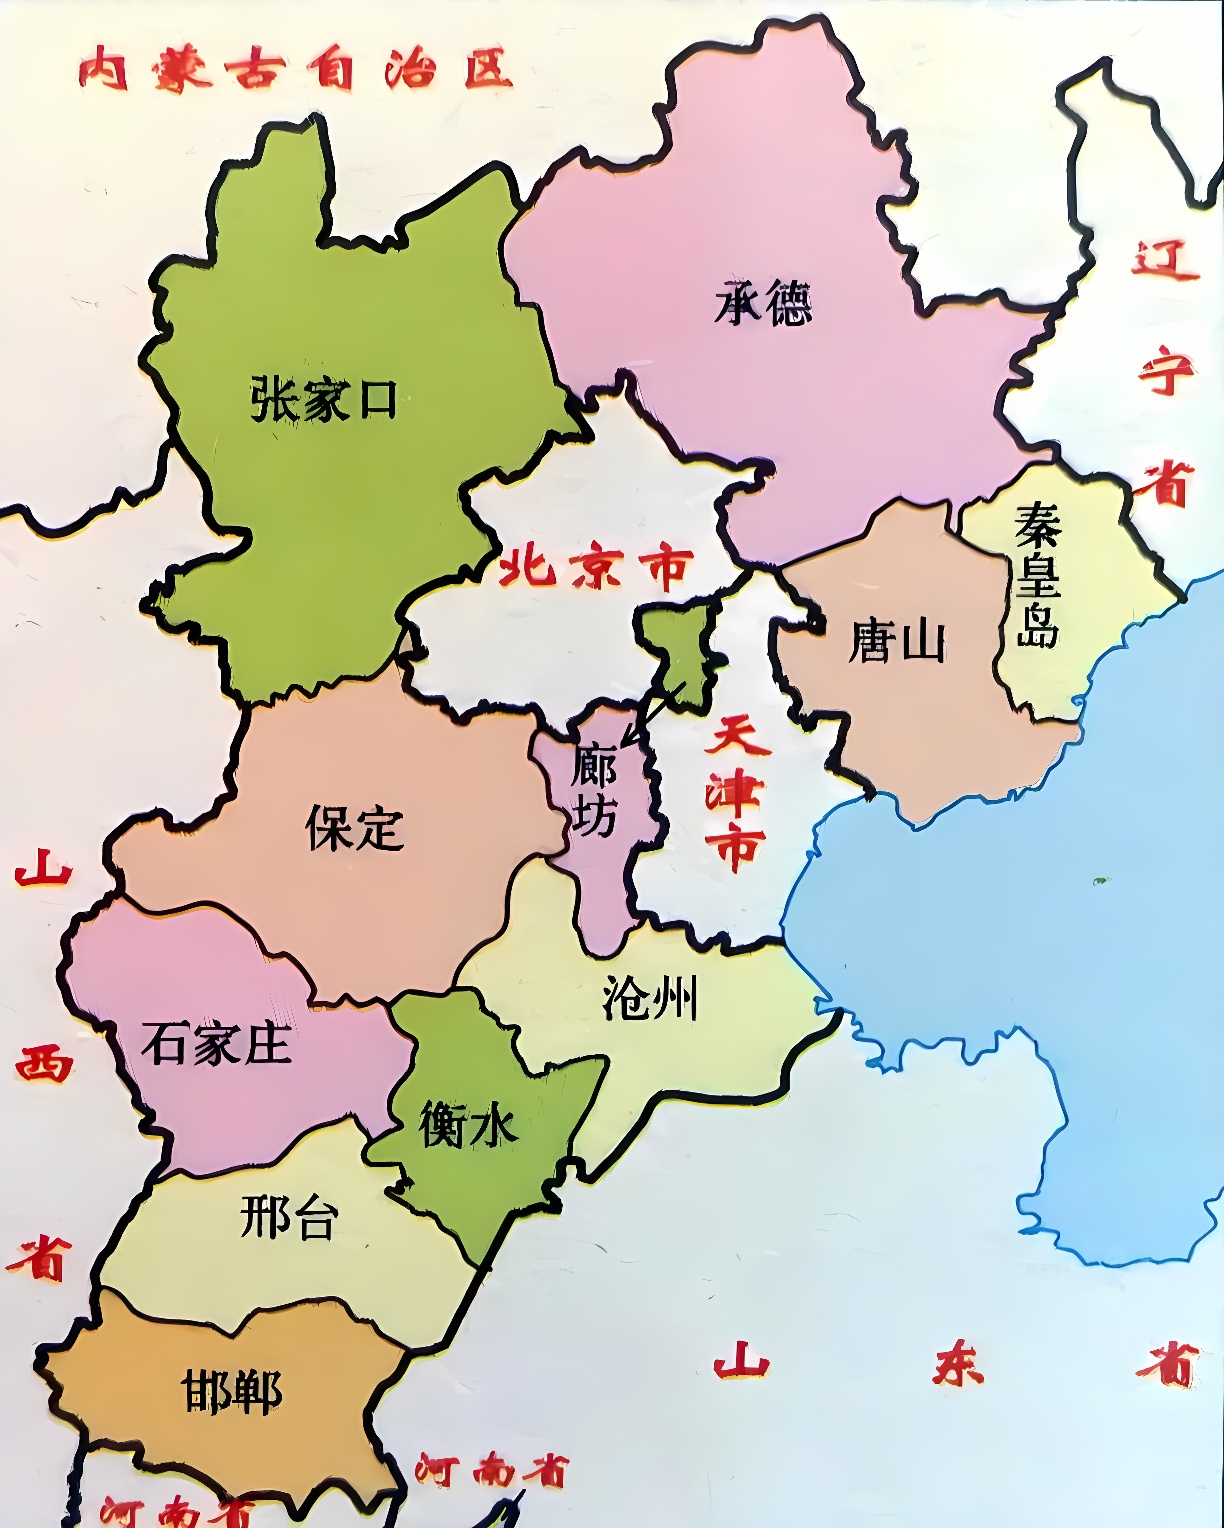 这是一张标注有中文地名的中国地图，展示了不同颜色区分的多个省份，没有特定的比例尺或图例。